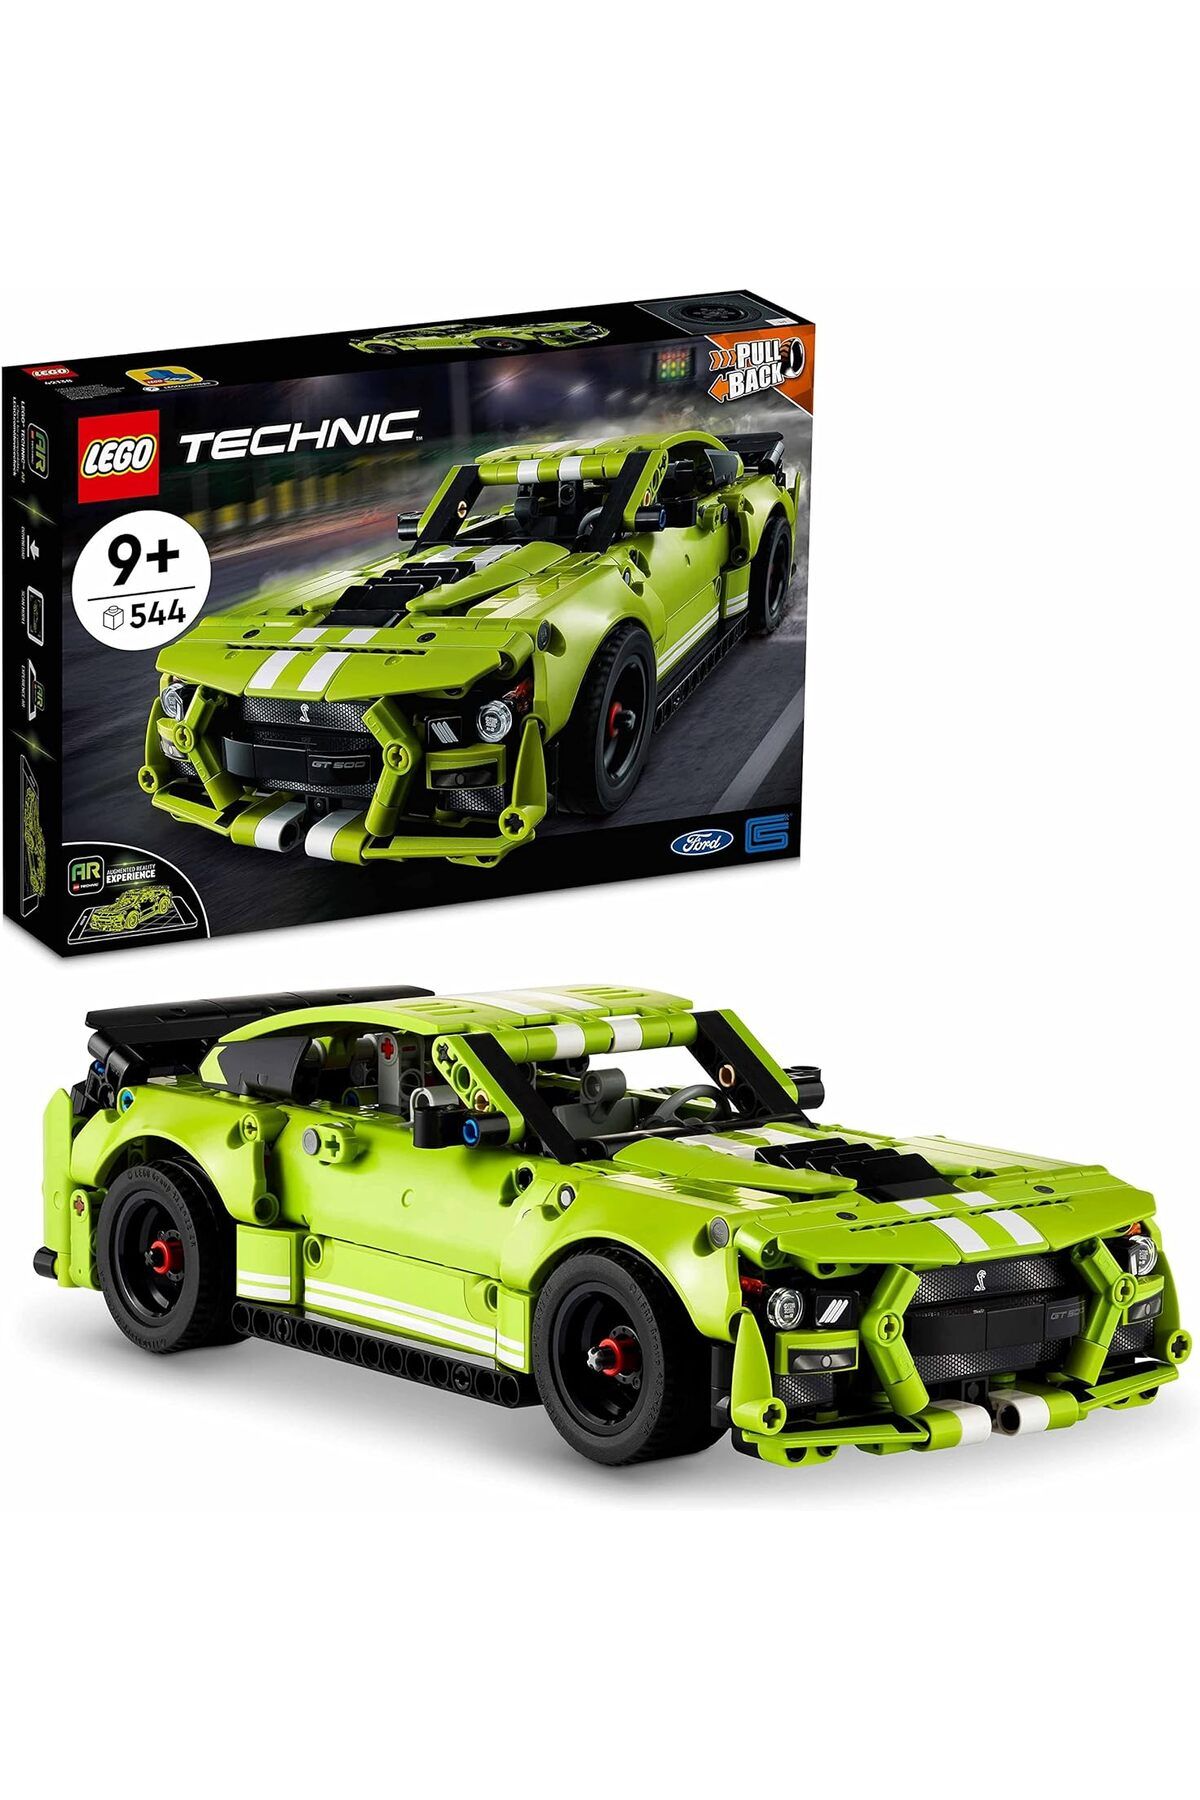 LEGO ® Technic Ford Mustang Shelby® GT500® 42138 – Koleksiyonluk Oyuncak Model Yapım Seti (544 Parça)